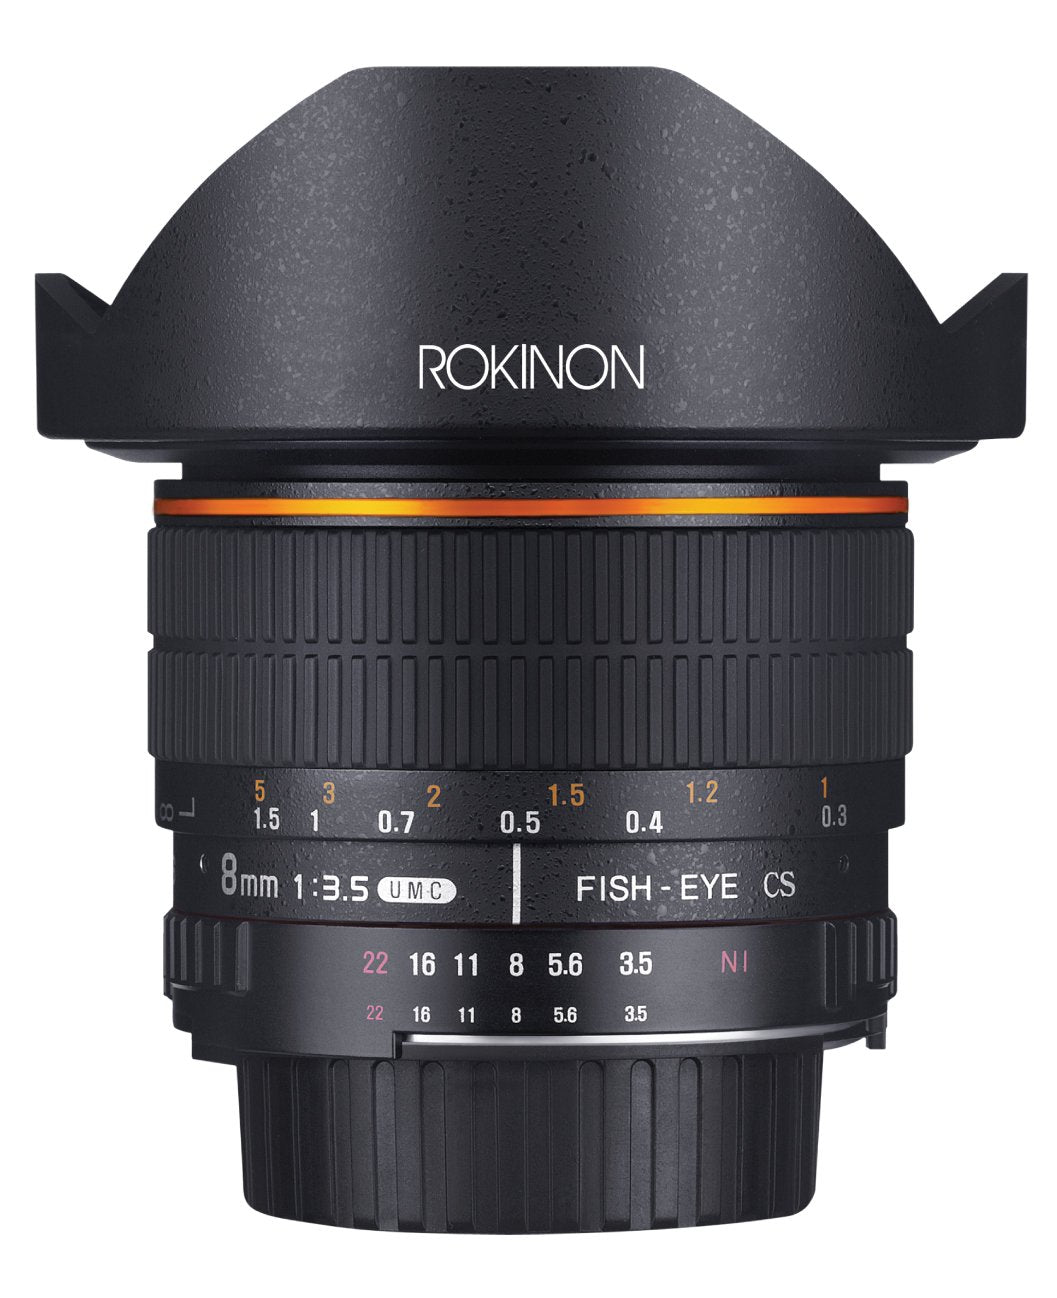 Rokinon 8mm F3.5 Fisheye Lens for Nikon F